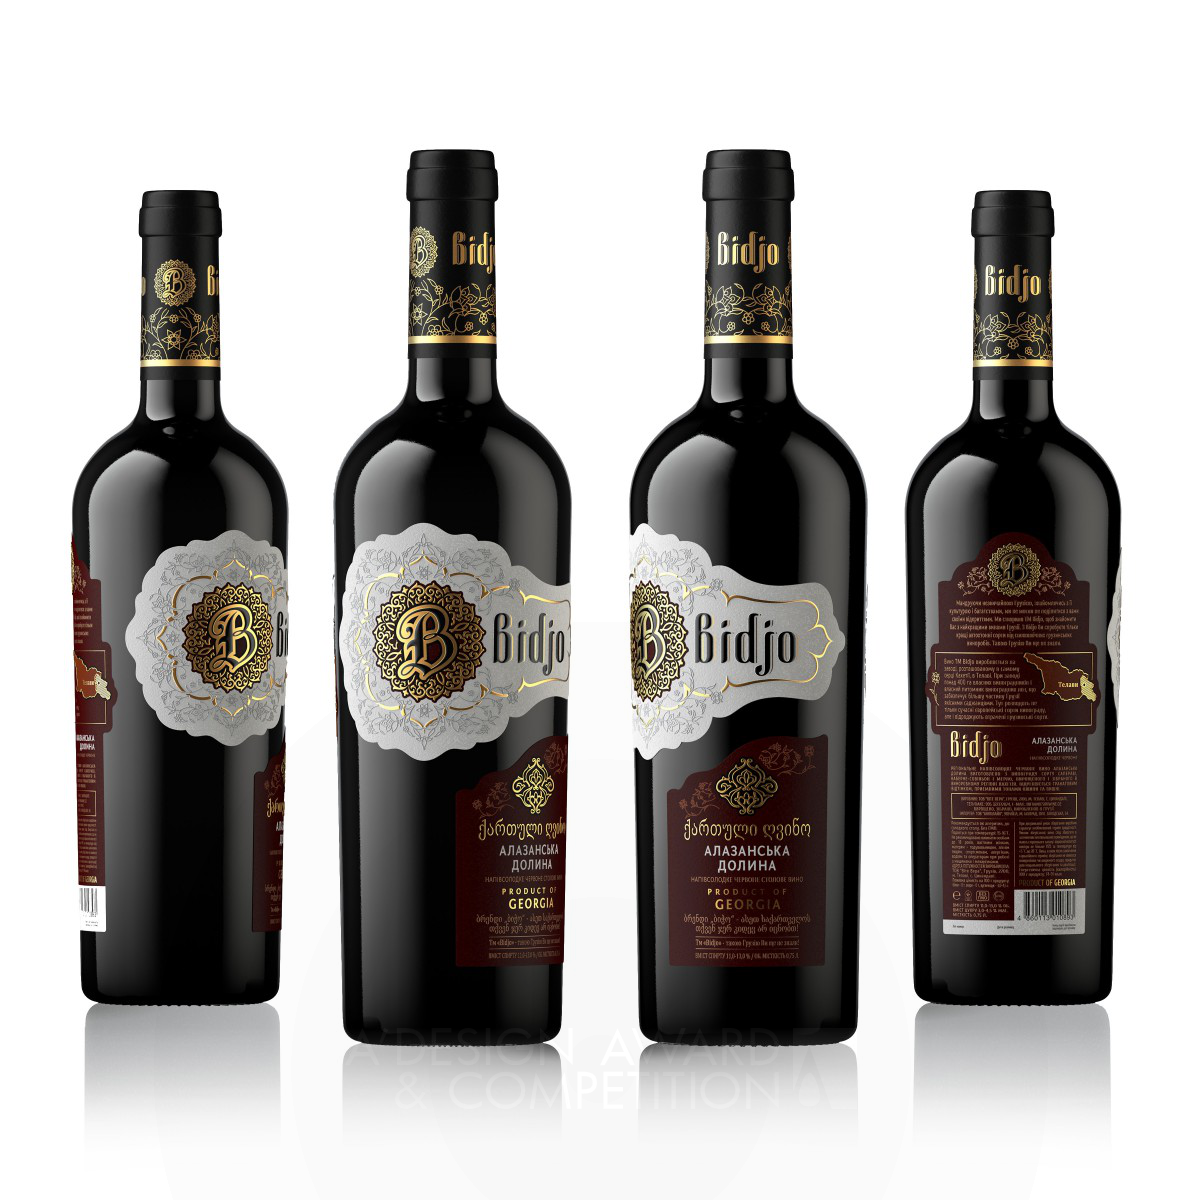 Valerii Sumilov Wines Label